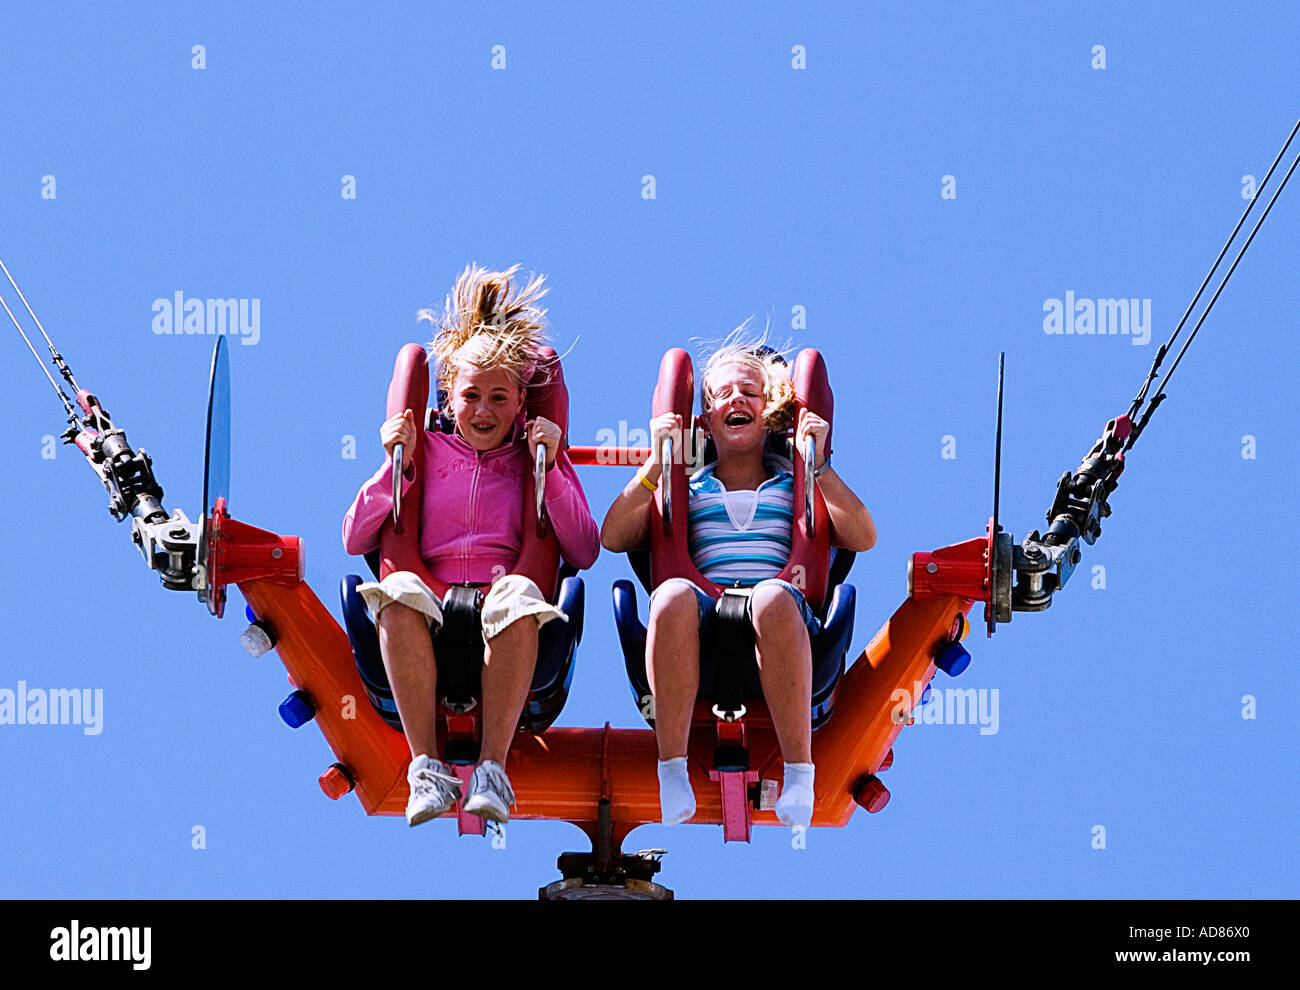 Foto von zwei kleinen Mädchen in Mitte hüpfen auf der Sling Shot-Karneval-Fahrt Stockfoto